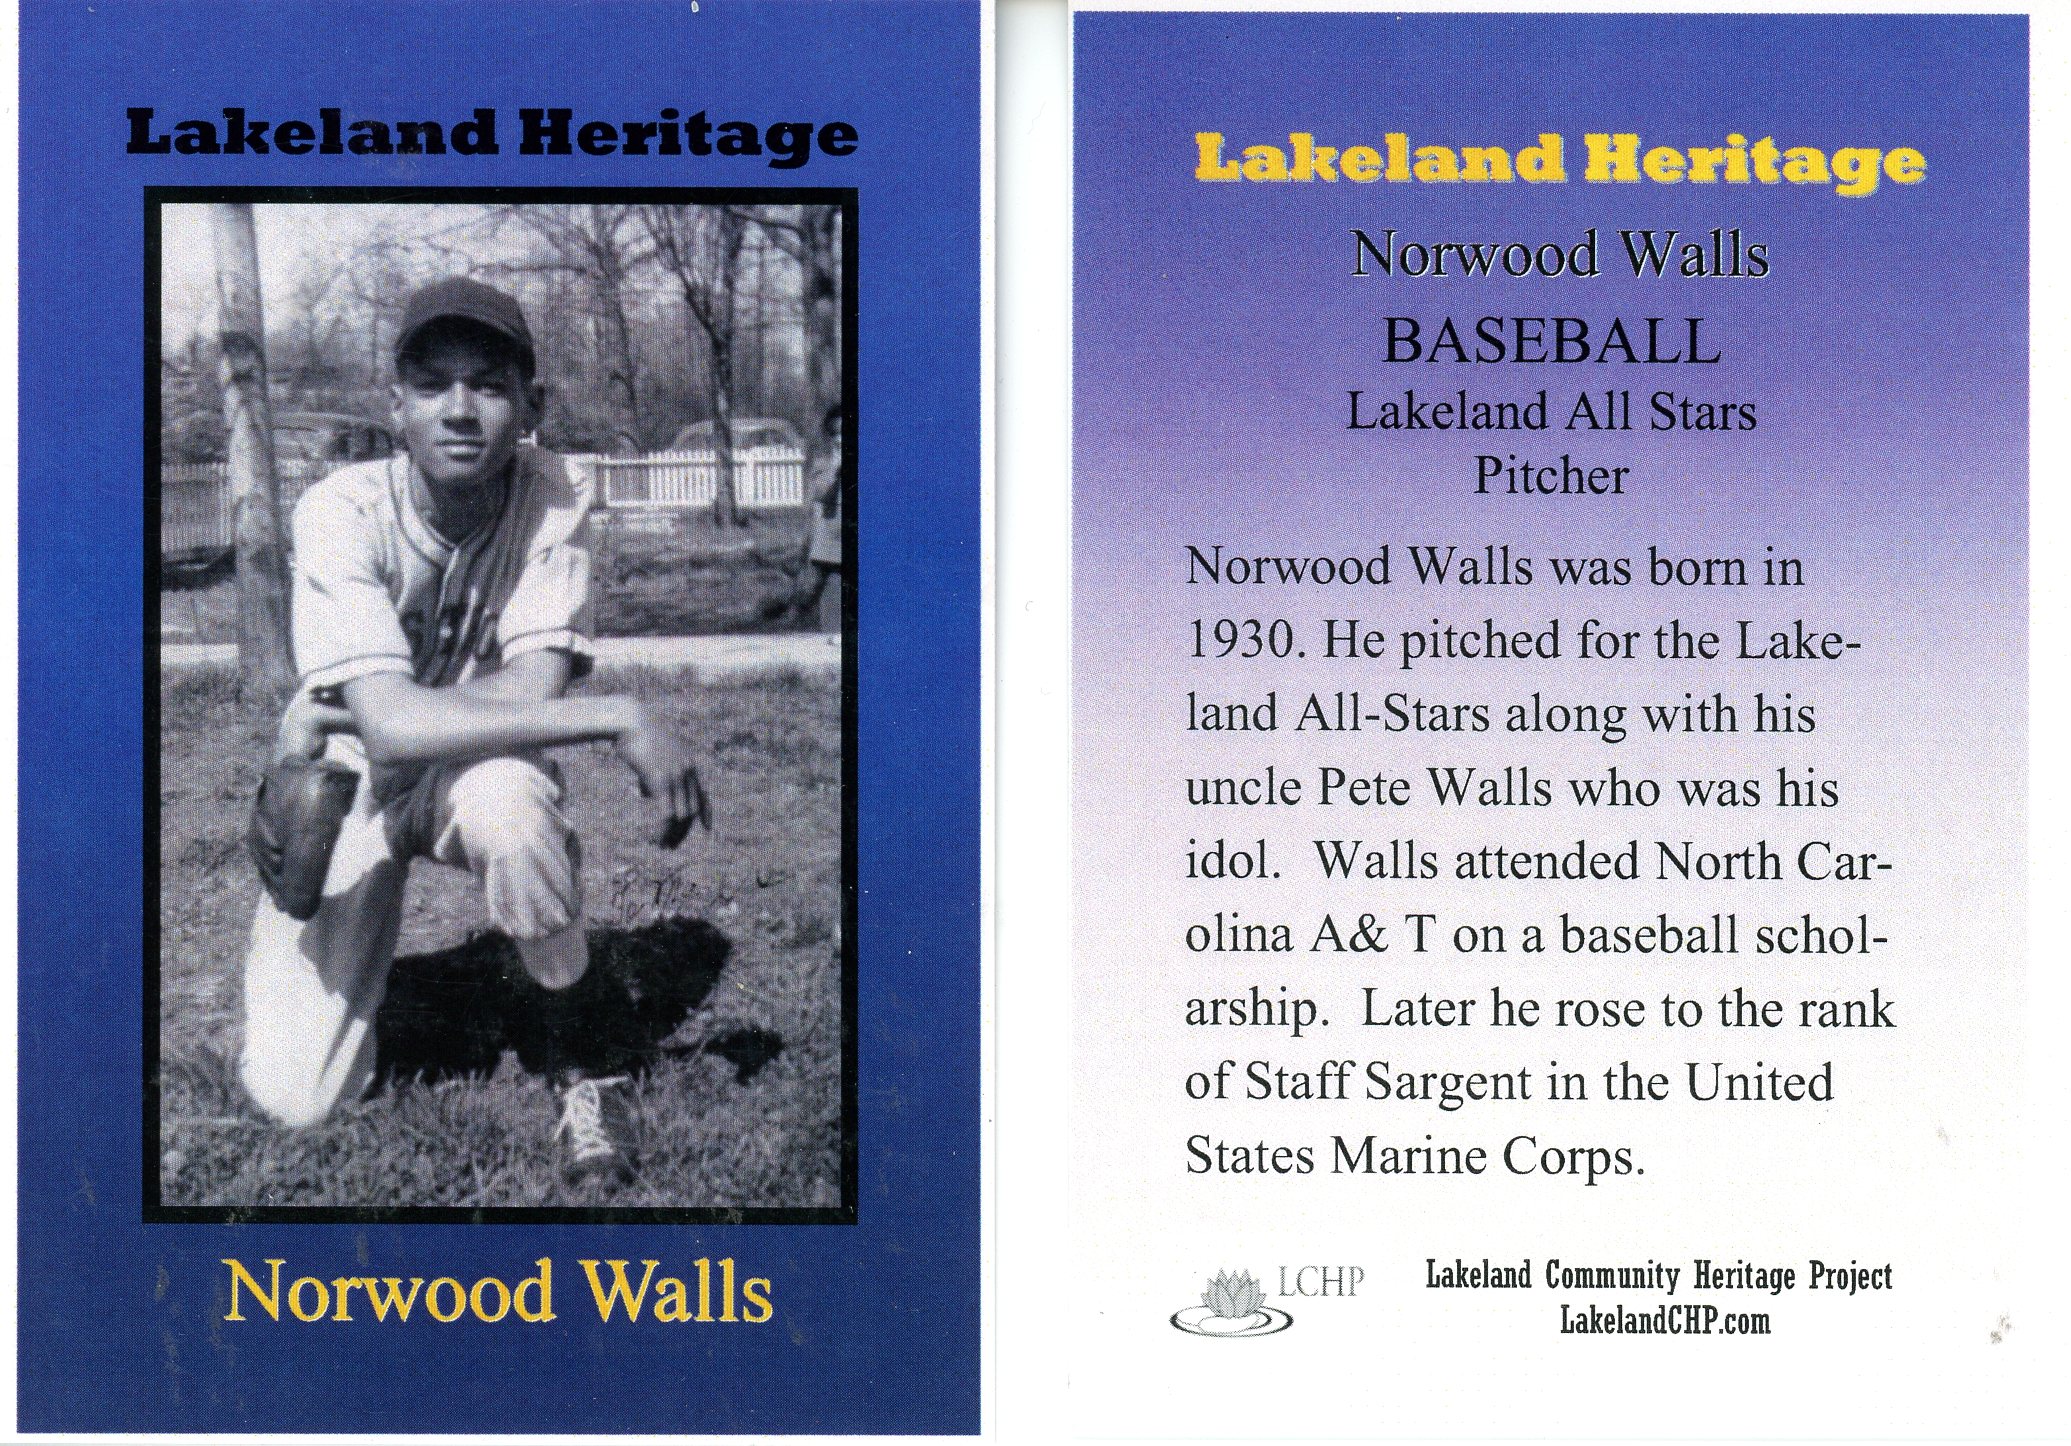 Norwood Walls